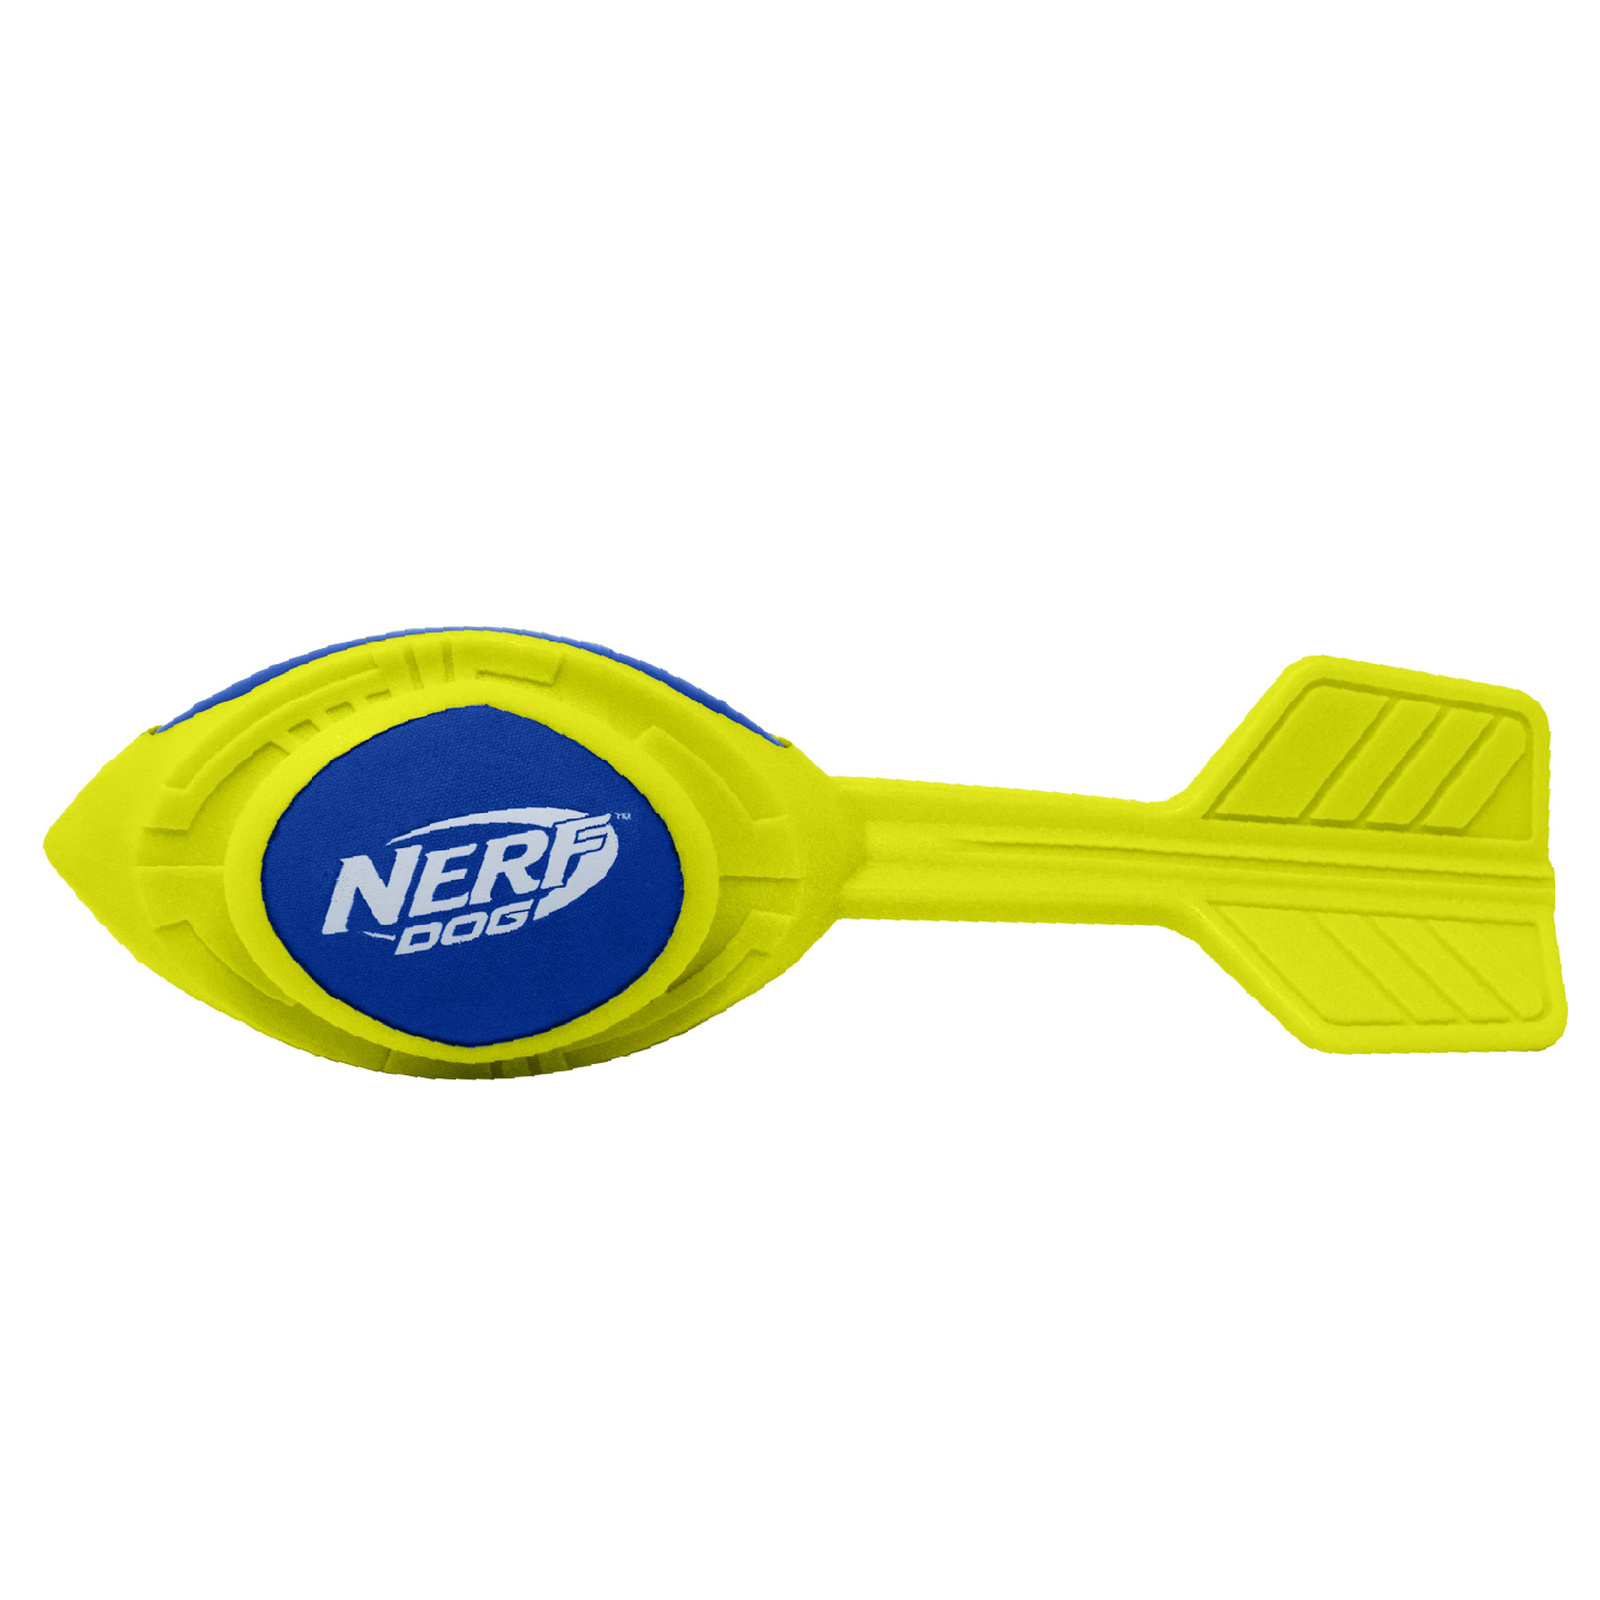 Nerf Nerf игрушка из вспененной резины 30 см (серия Мегатон) (290 г) nerf мяч для регби из вспененной резины и нейлона 18 см серия мегатон синийоранжевый 54412 0 263 кг